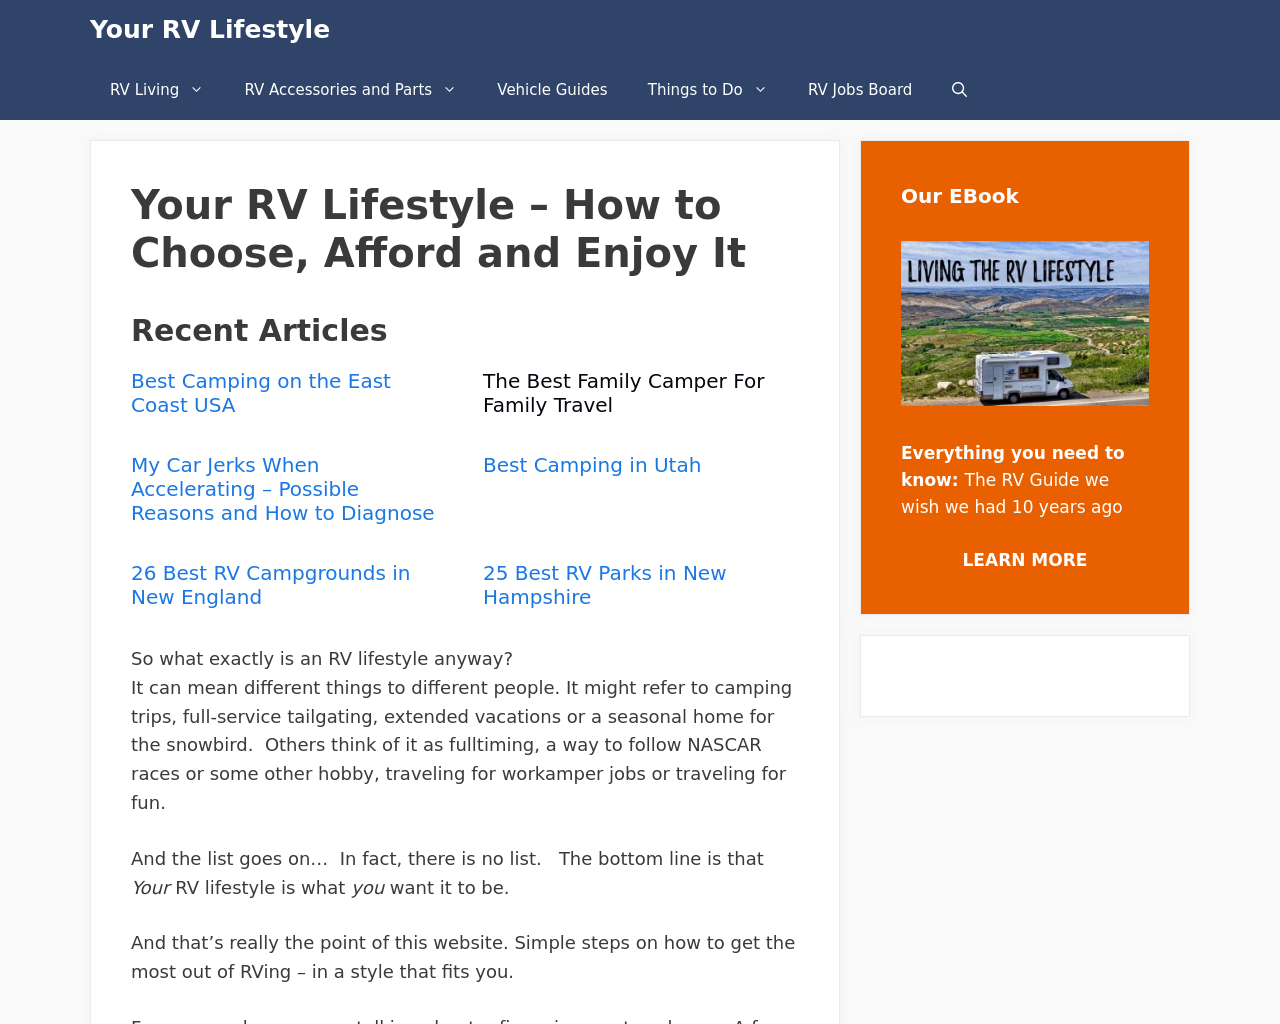 your-rv-lifestyle.com